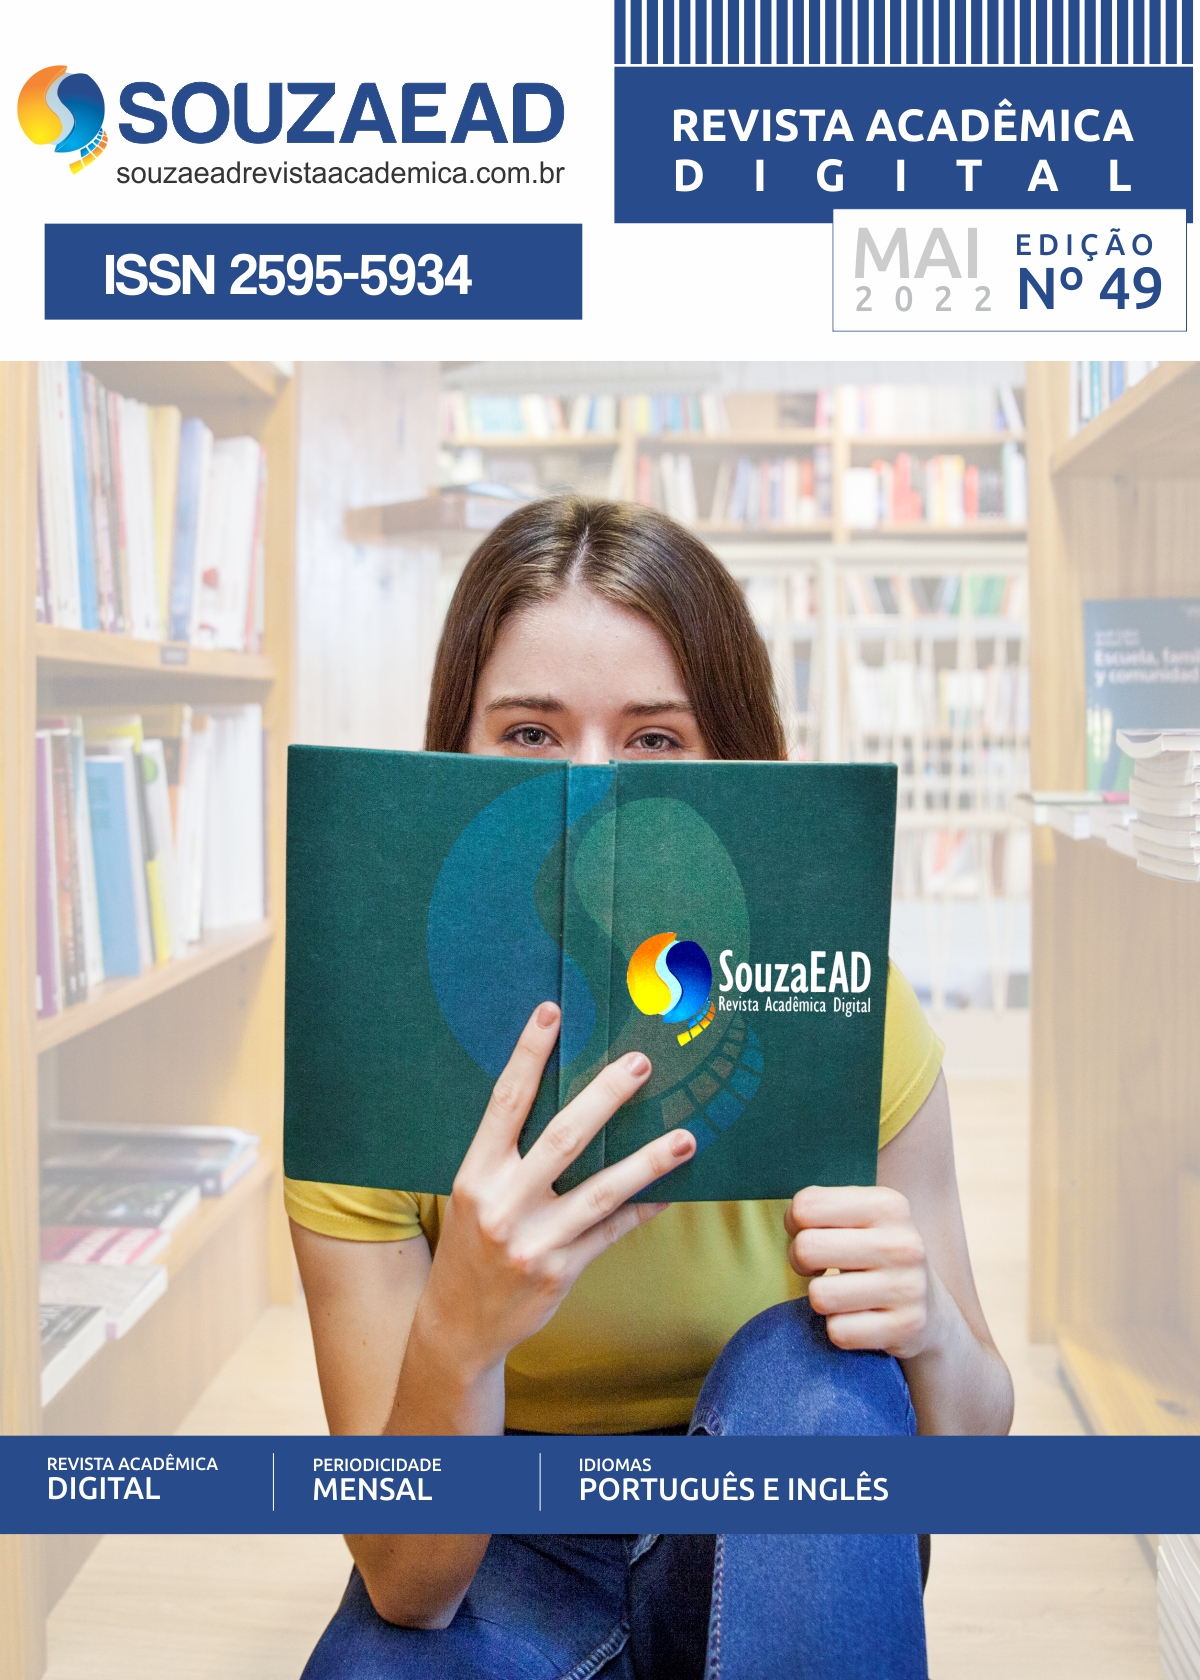 SOUZA EAD Revista Acadêmica Digital n.49 2022